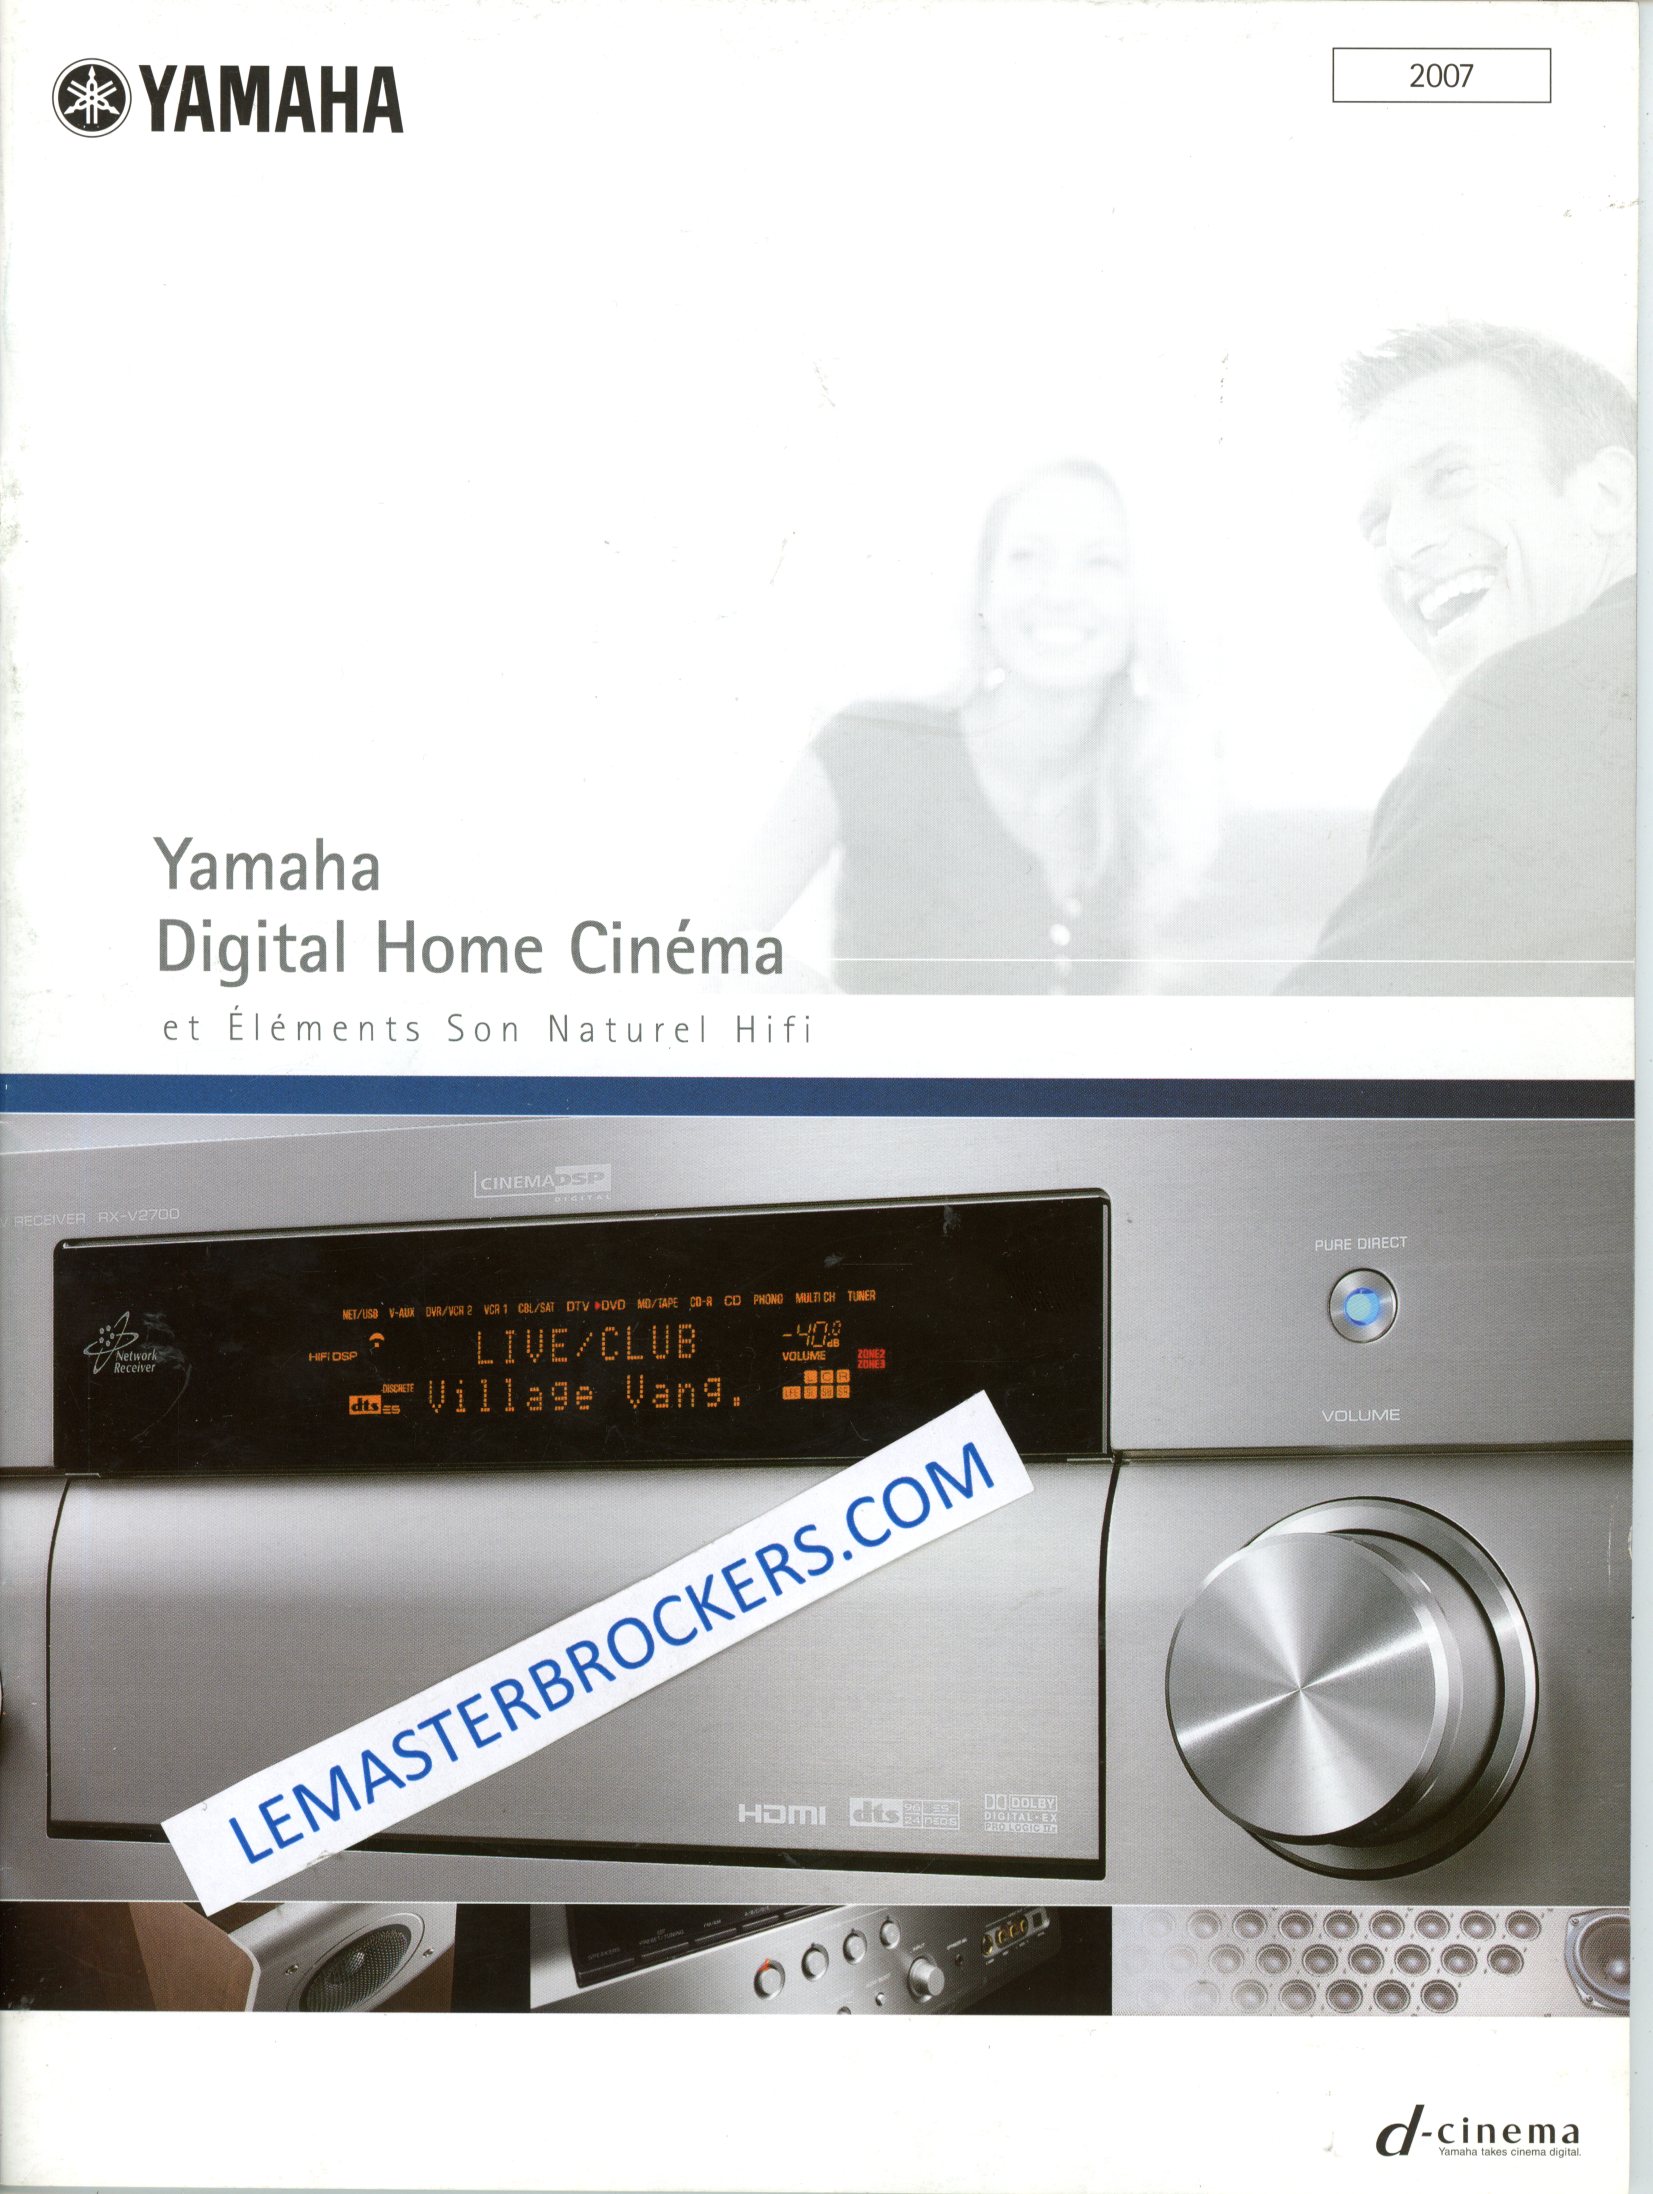 YAMAHA DIGITAL HOME CINEMA ET HIFI 2007